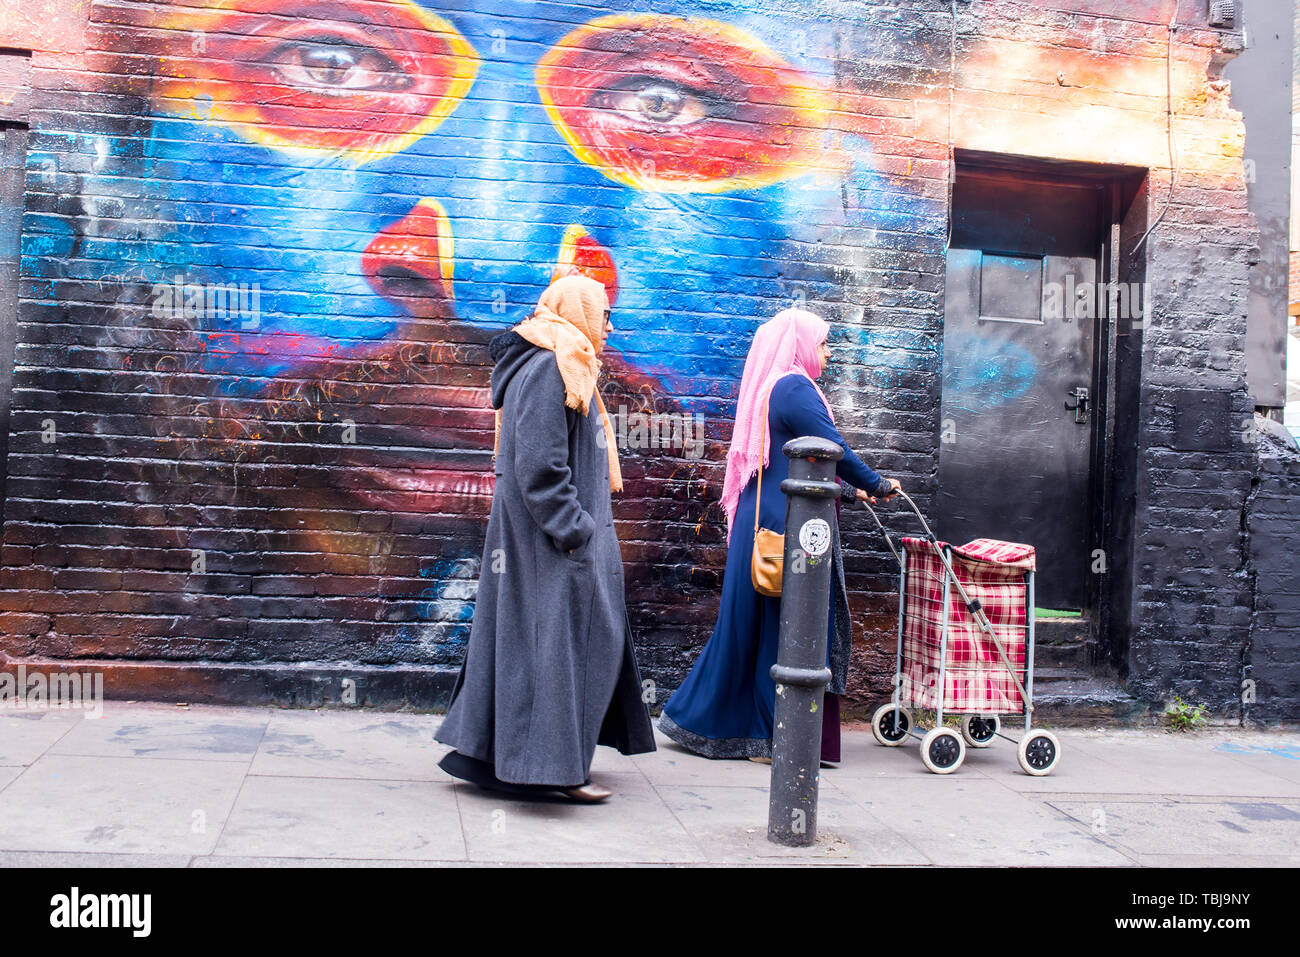 Brick Lane, Shoreditch, London, England, UK - April 2019: Zwei indische Frauen, Hijabs wandern in Brick Lane in der Nähe einer Wand in Graffiti mur abgedeckt Stockfoto